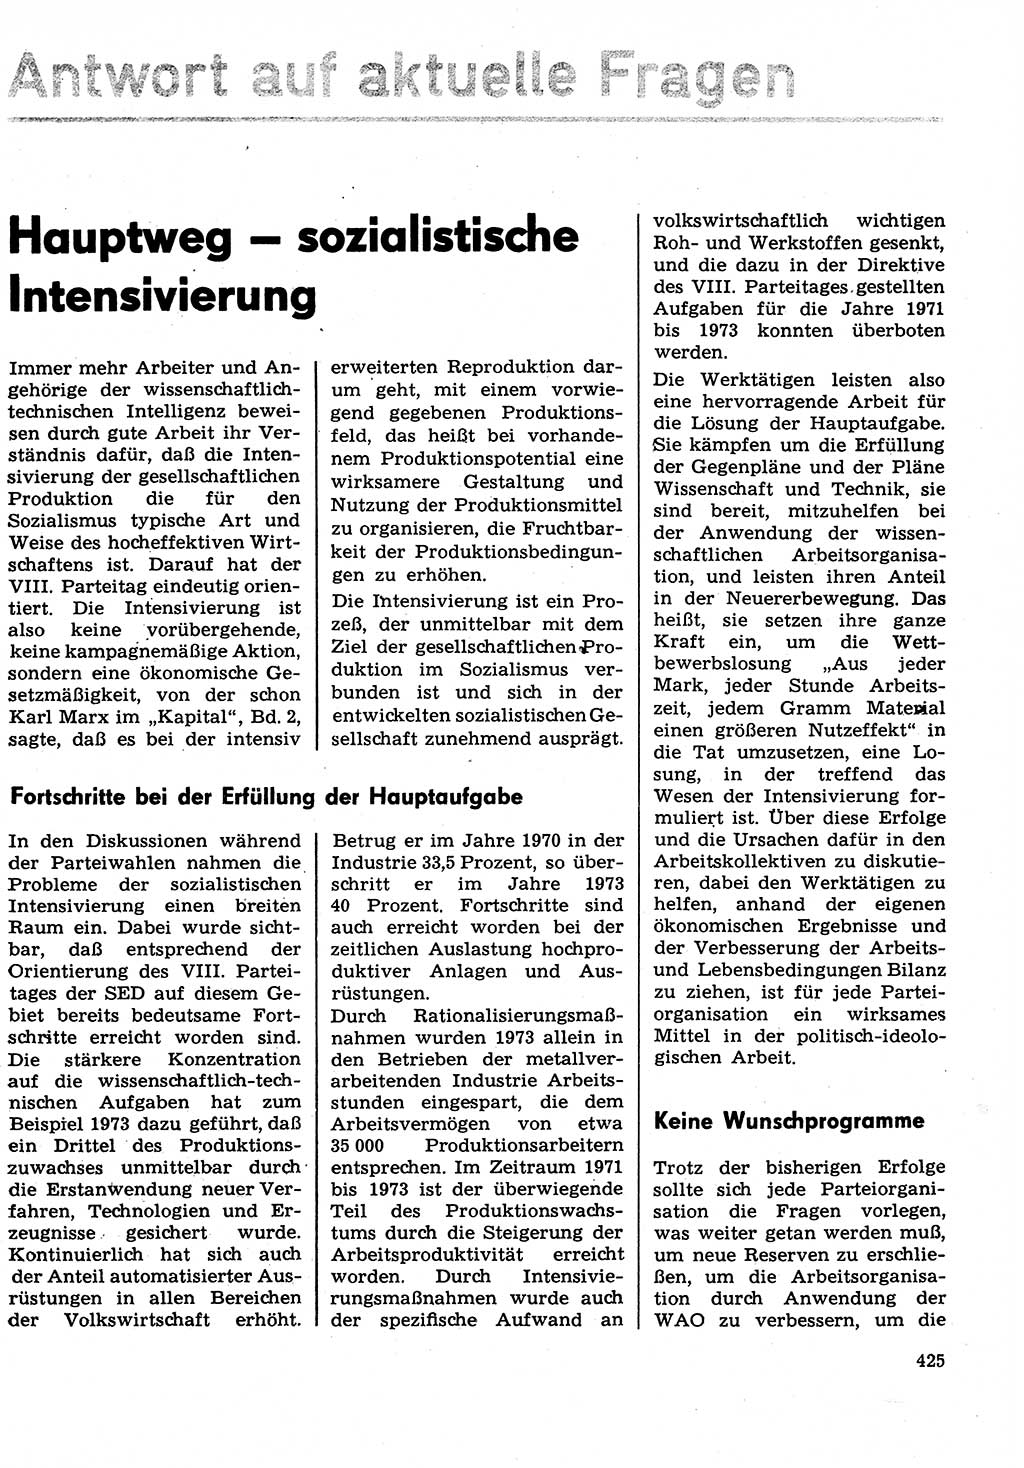 Neuer Weg (NW), Organ des Zentralkomitees (ZK) der SED (Sozialistische Einheitspartei Deutschlands) für Fragen des Parteilebens, 29. Jahrgang [Deutsche Demokratische Republik (DDR)] 1974, Seite 425 (NW ZK SED DDR 1974, S. 425)